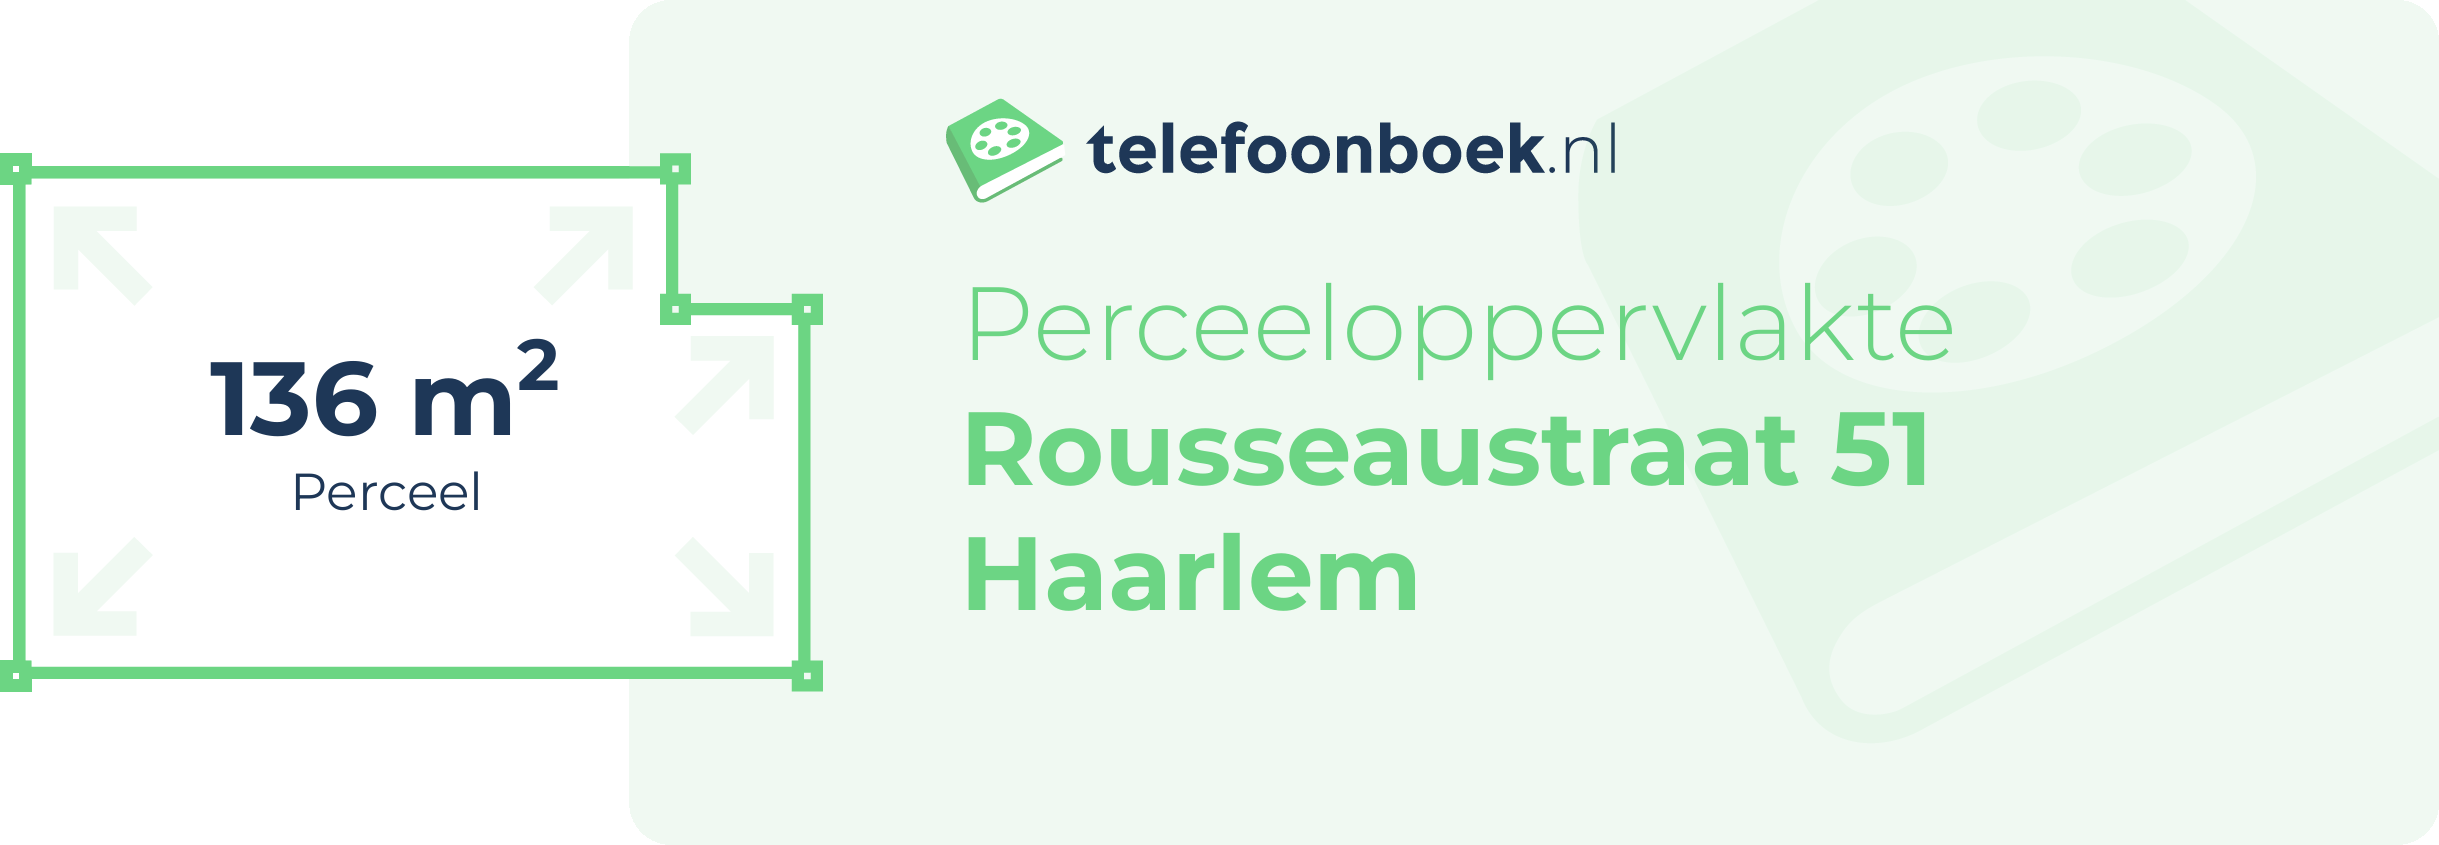 Perceeloppervlakte Rousseaustraat 51 Haarlem